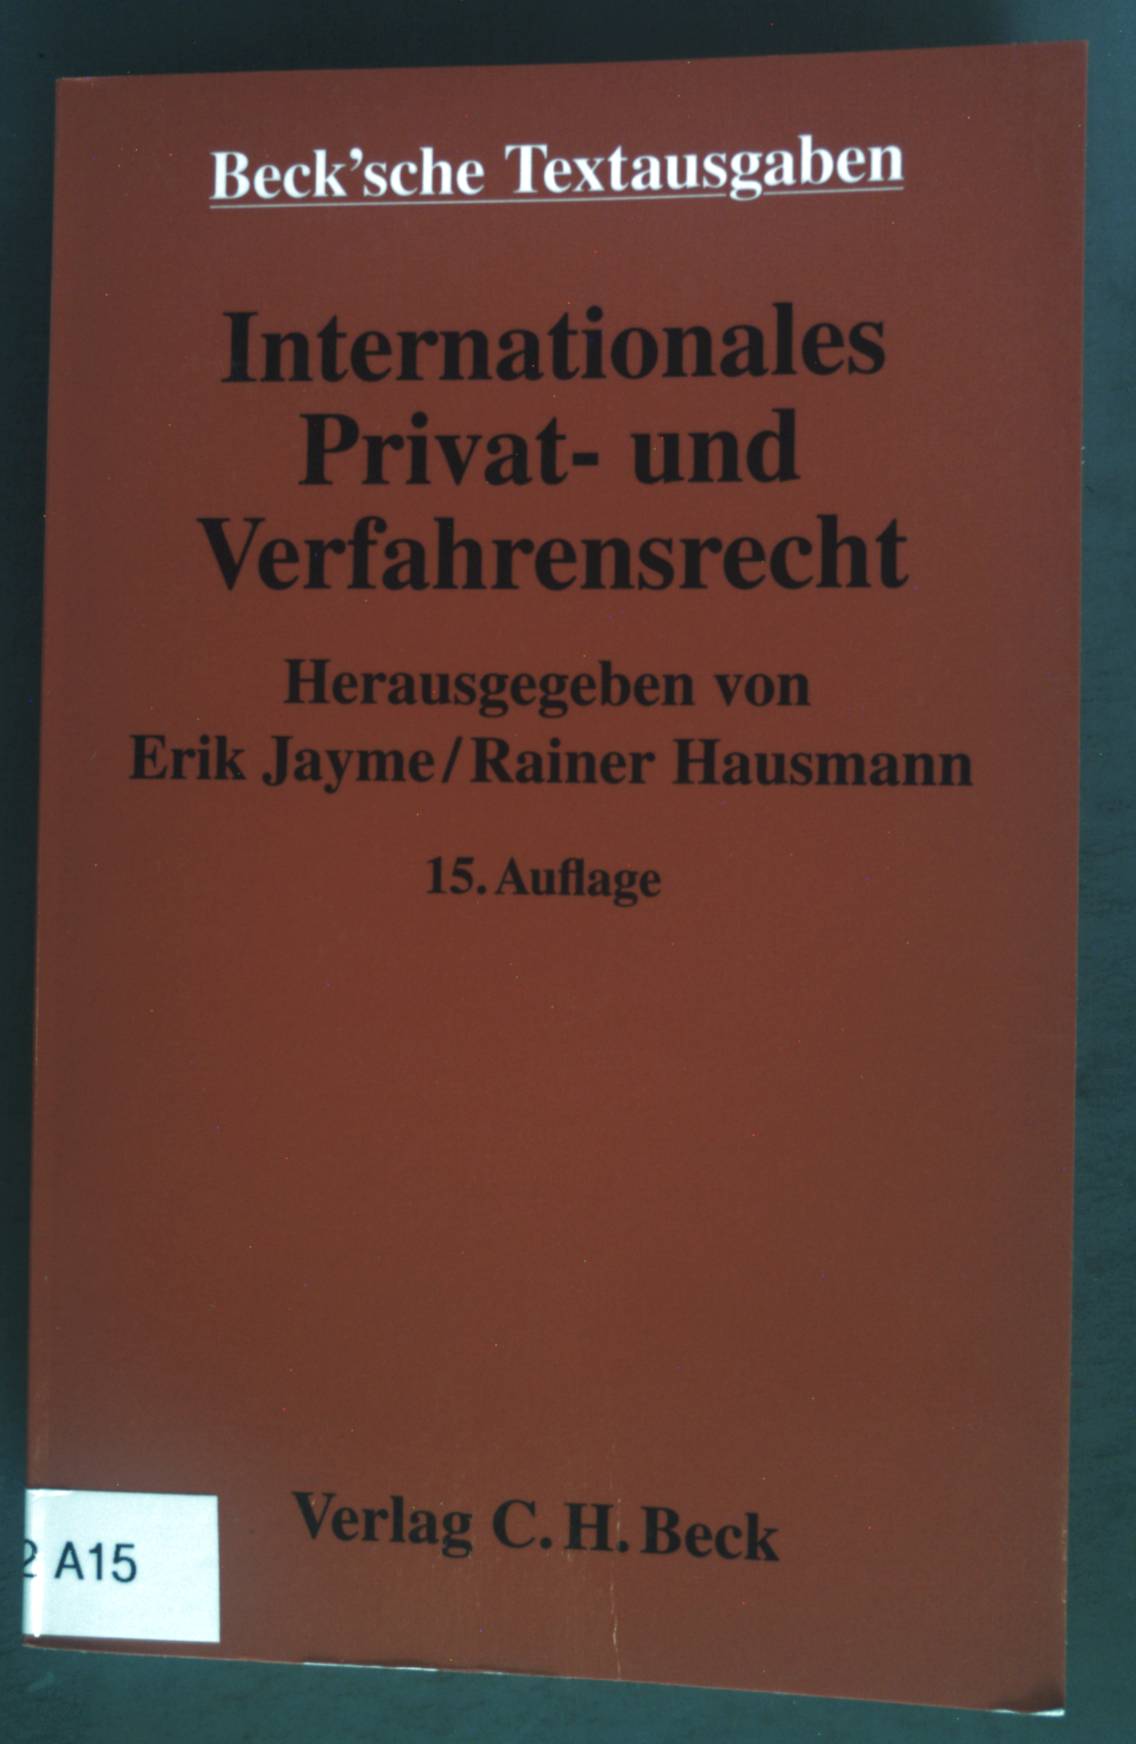 Internationales Privat- und Verfahrensrecht: Textausgabe. Beck'sche Textausgaben. 15. Auflage; - Jayme, Erik (Herausgeber) und Rainer Hausmann